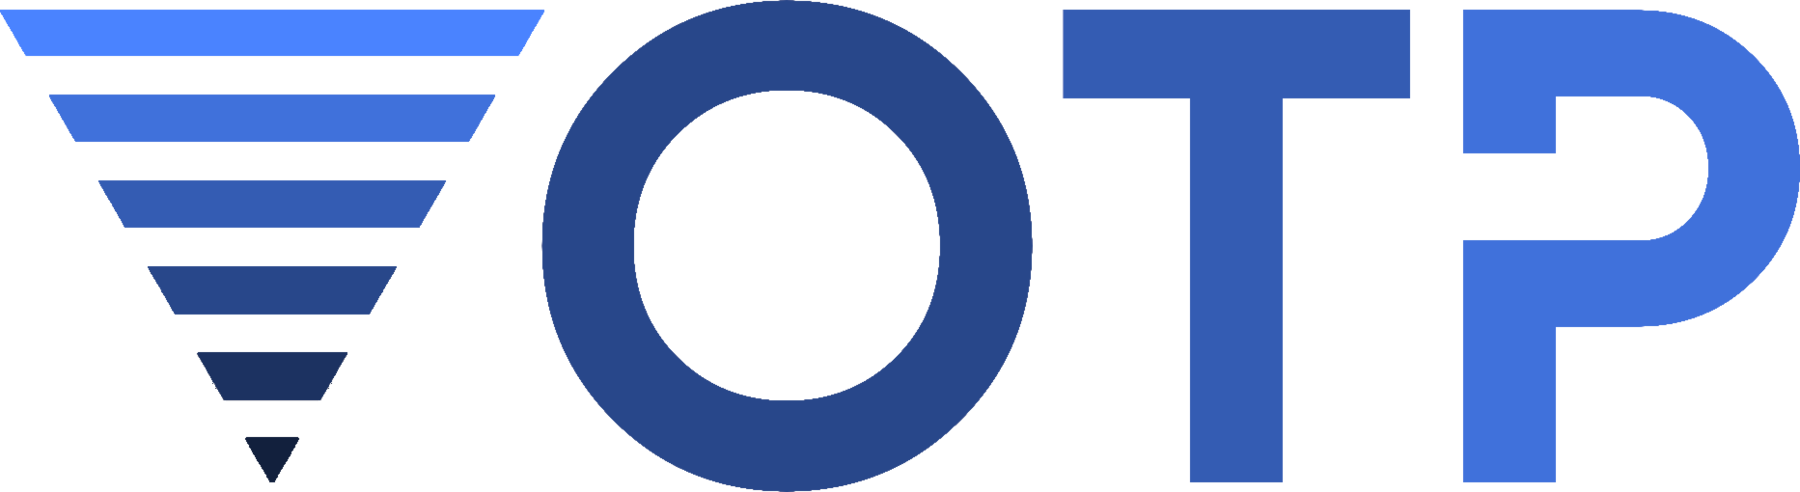 Nutikad lahendused reisitööstusele - Turismi online partner Logo